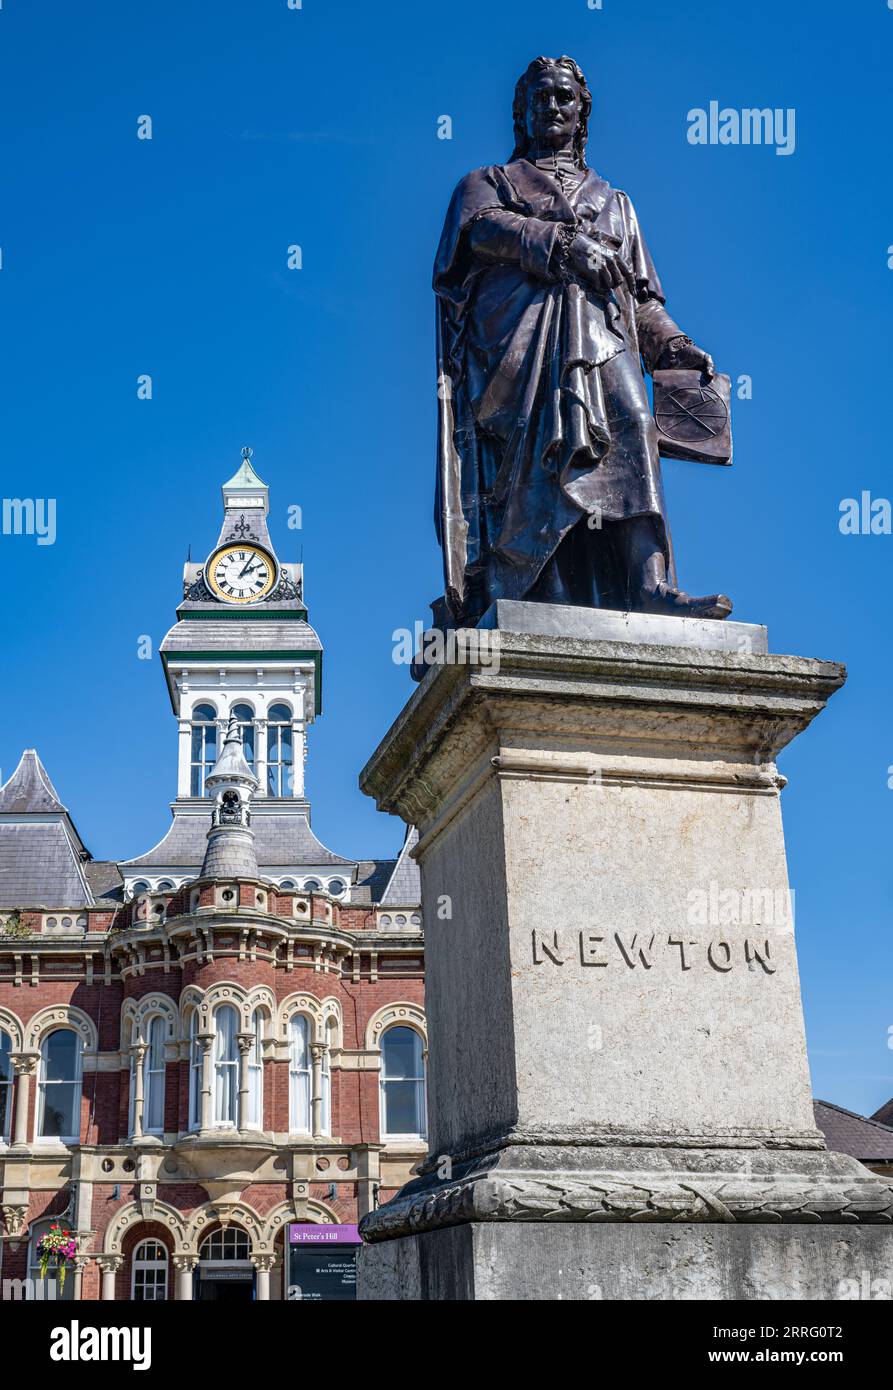 St Peters Hill Grantham Lincolnshire – Statue von Sir Isaac Newton, der in der Stadt zur Schule ging, vor einem Sommerhimmel mit der Town Guildhall im Hintergrund Stockfoto